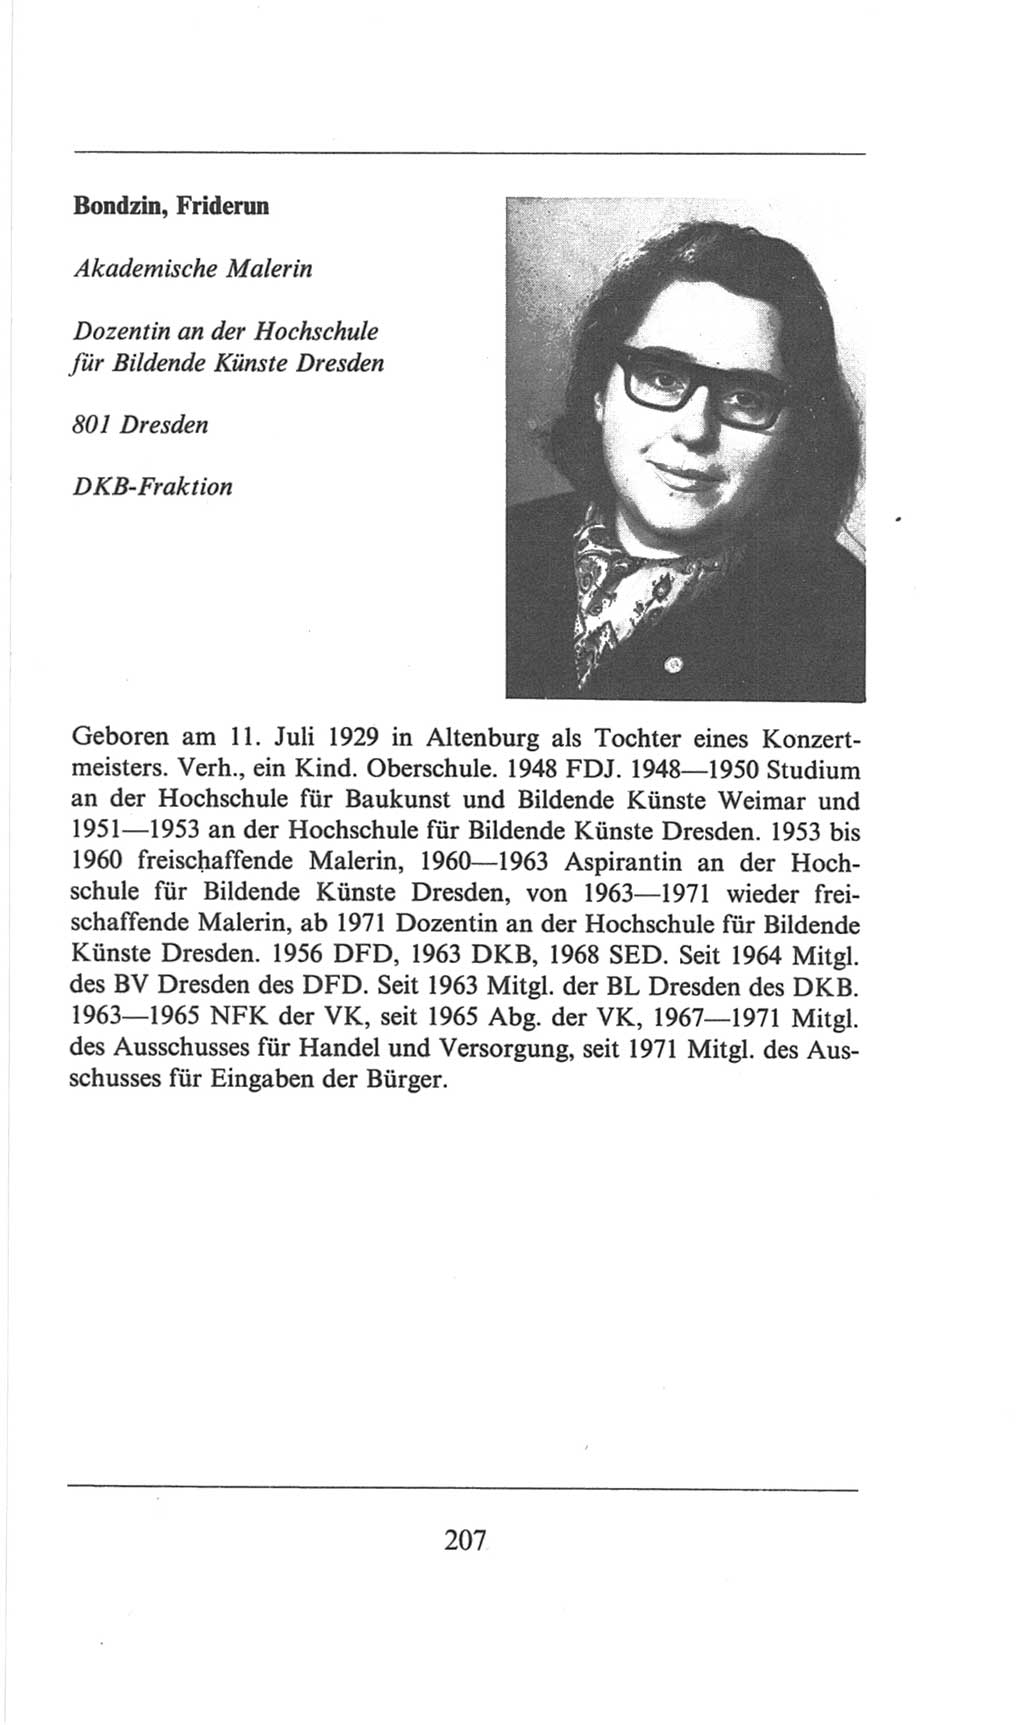 Volkskammer (VK) der Deutschen Demokratischen Republik (DDR), 6. Wahlperiode 1971-1976, Seite 207 (VK. DDR 6. WP. 1971-1976, S. 207)